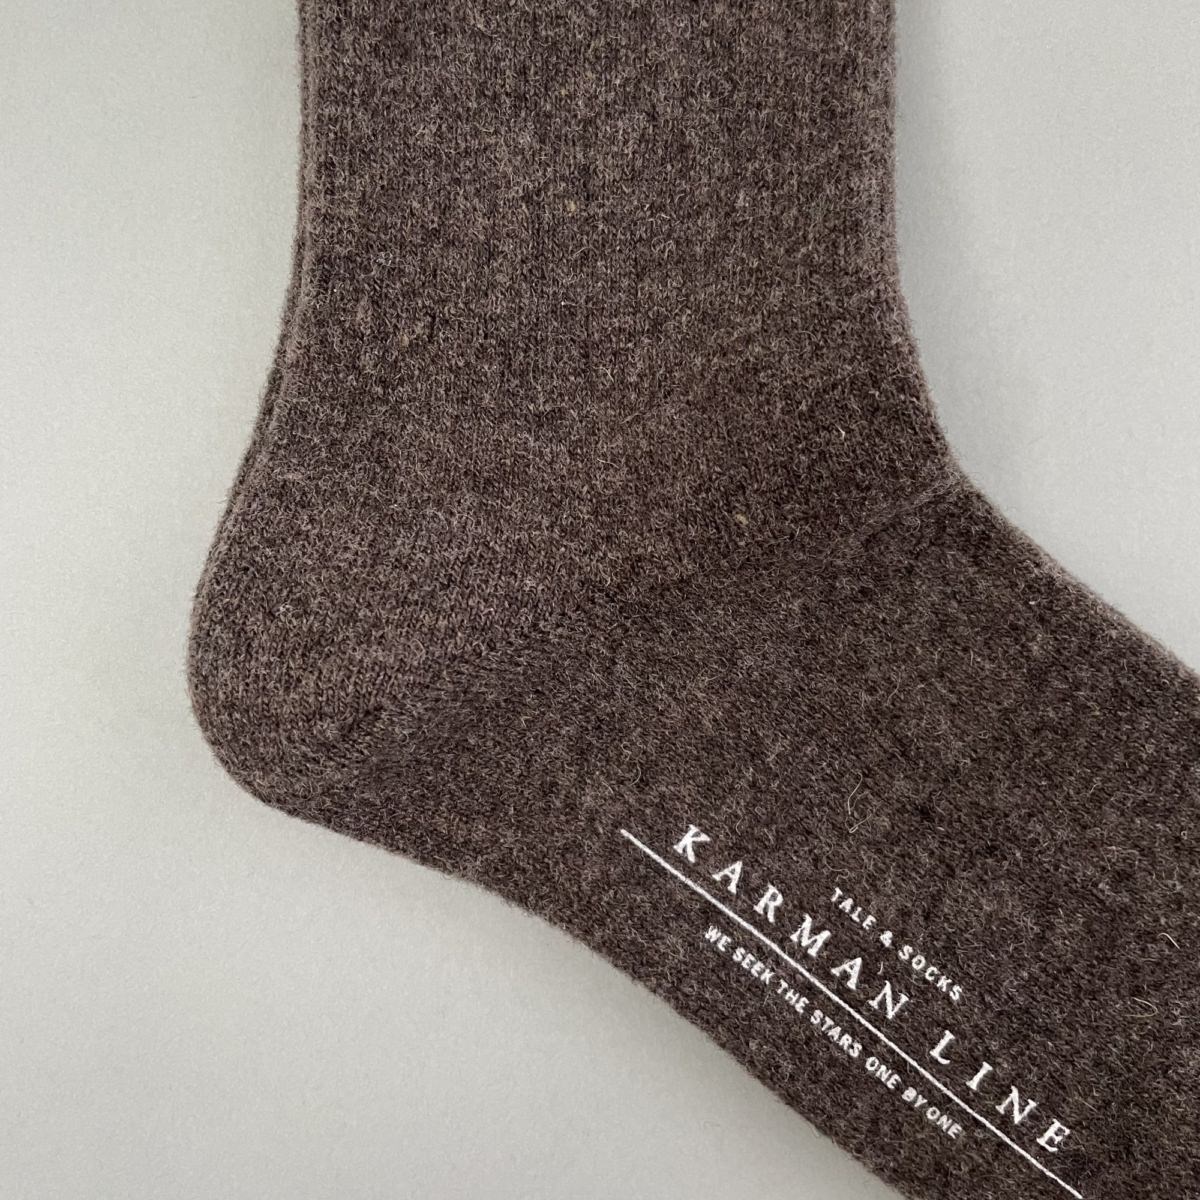 KARMAN LINE TAURUS / Socks / Taupe / 23-25cm